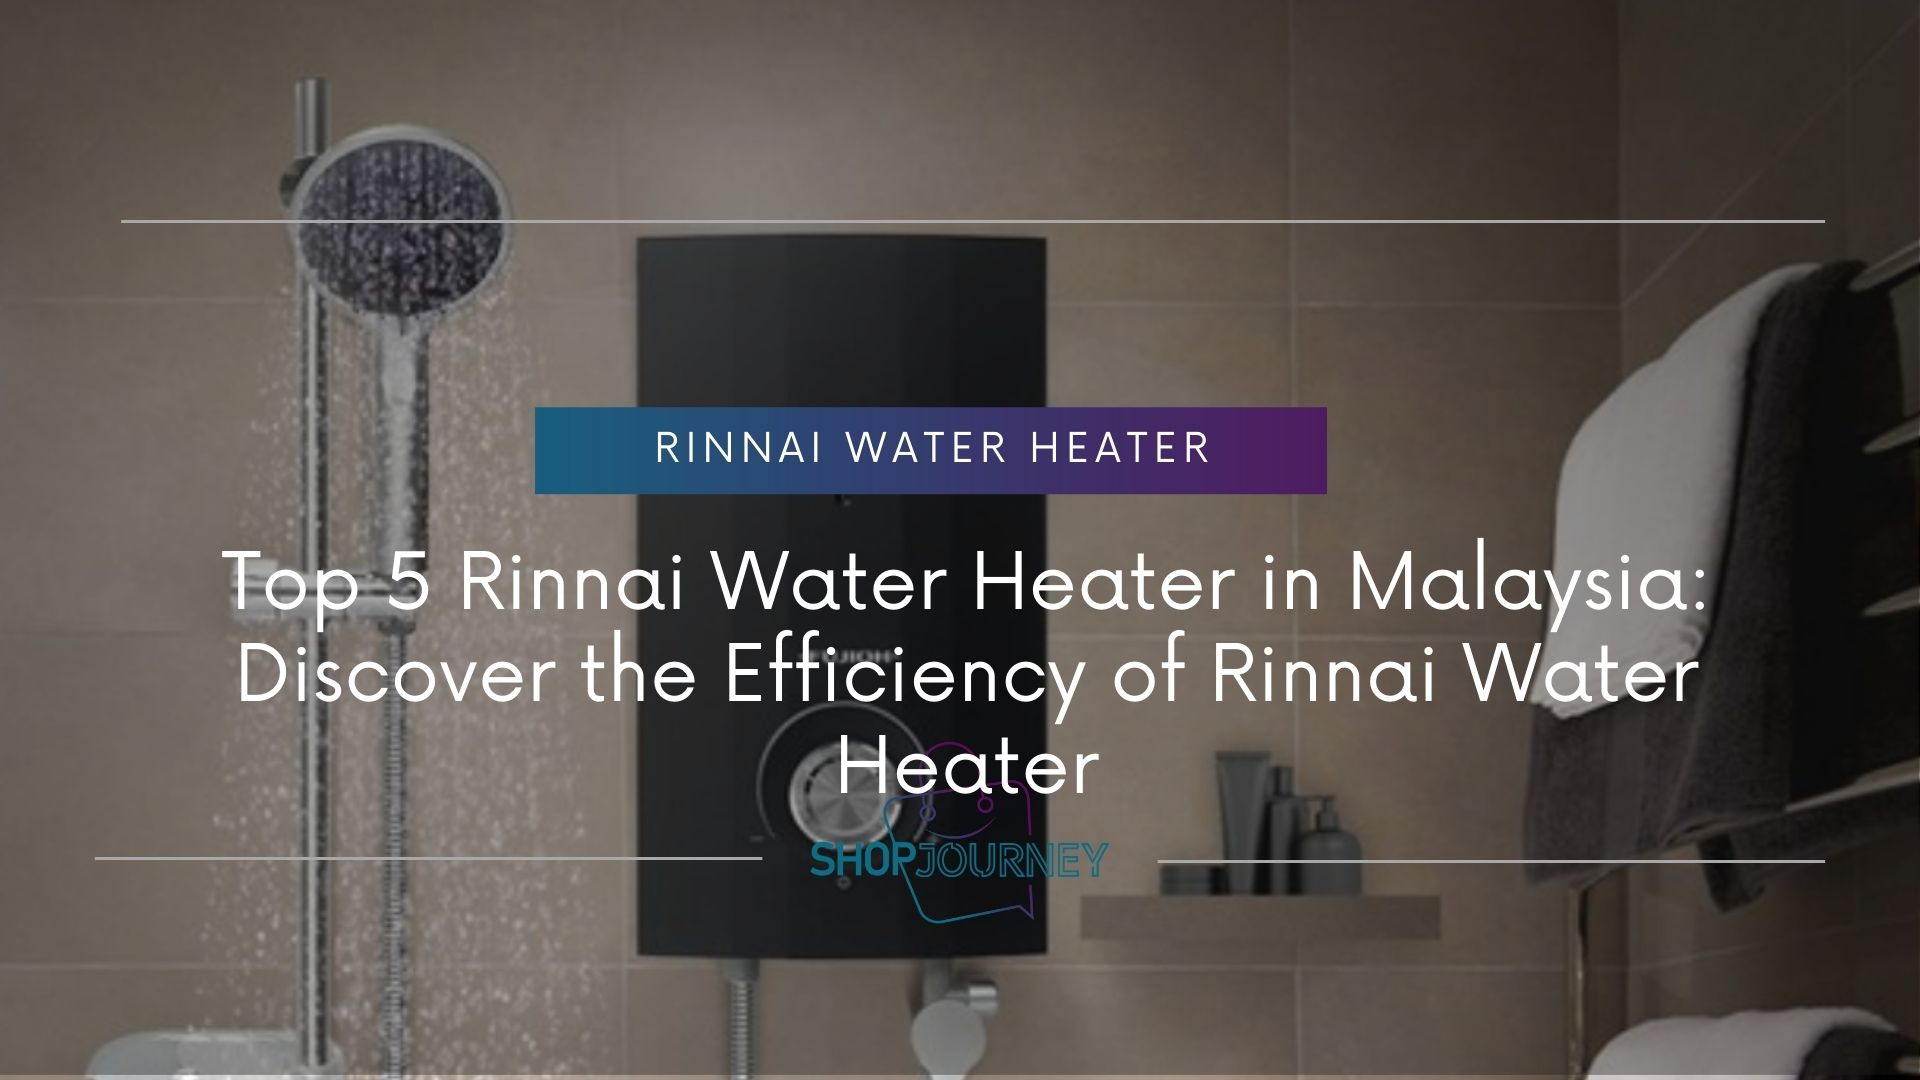 Rinnai Water Heater - Shop journey